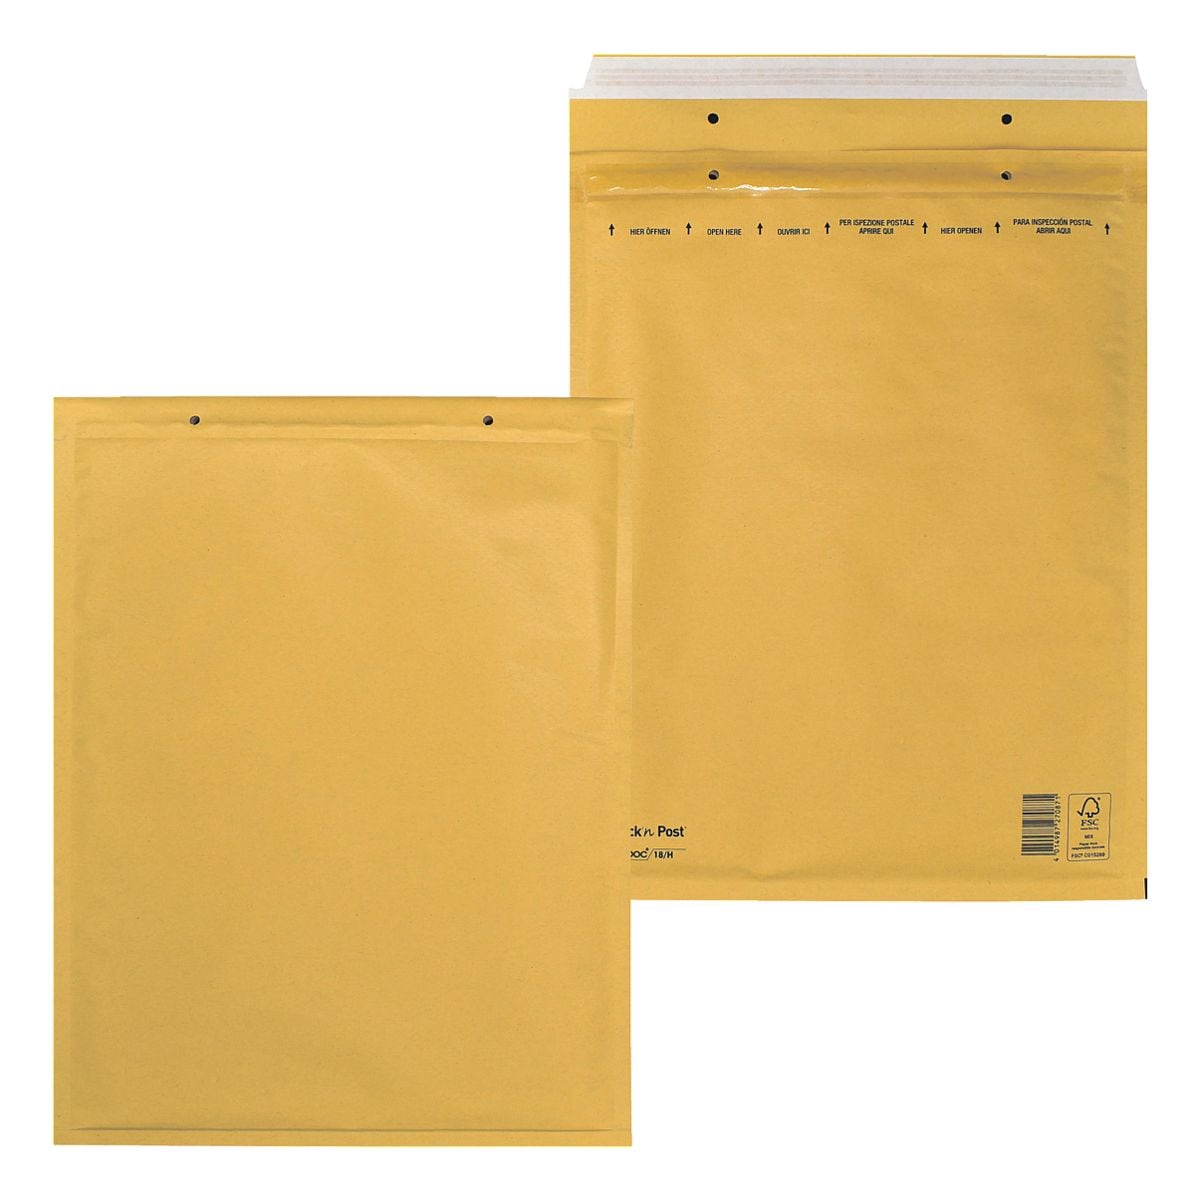 Mailmedia 100 Stck Luftpolster-Versandtaschen Airpoc, 29,2x37 cm, im Gropack